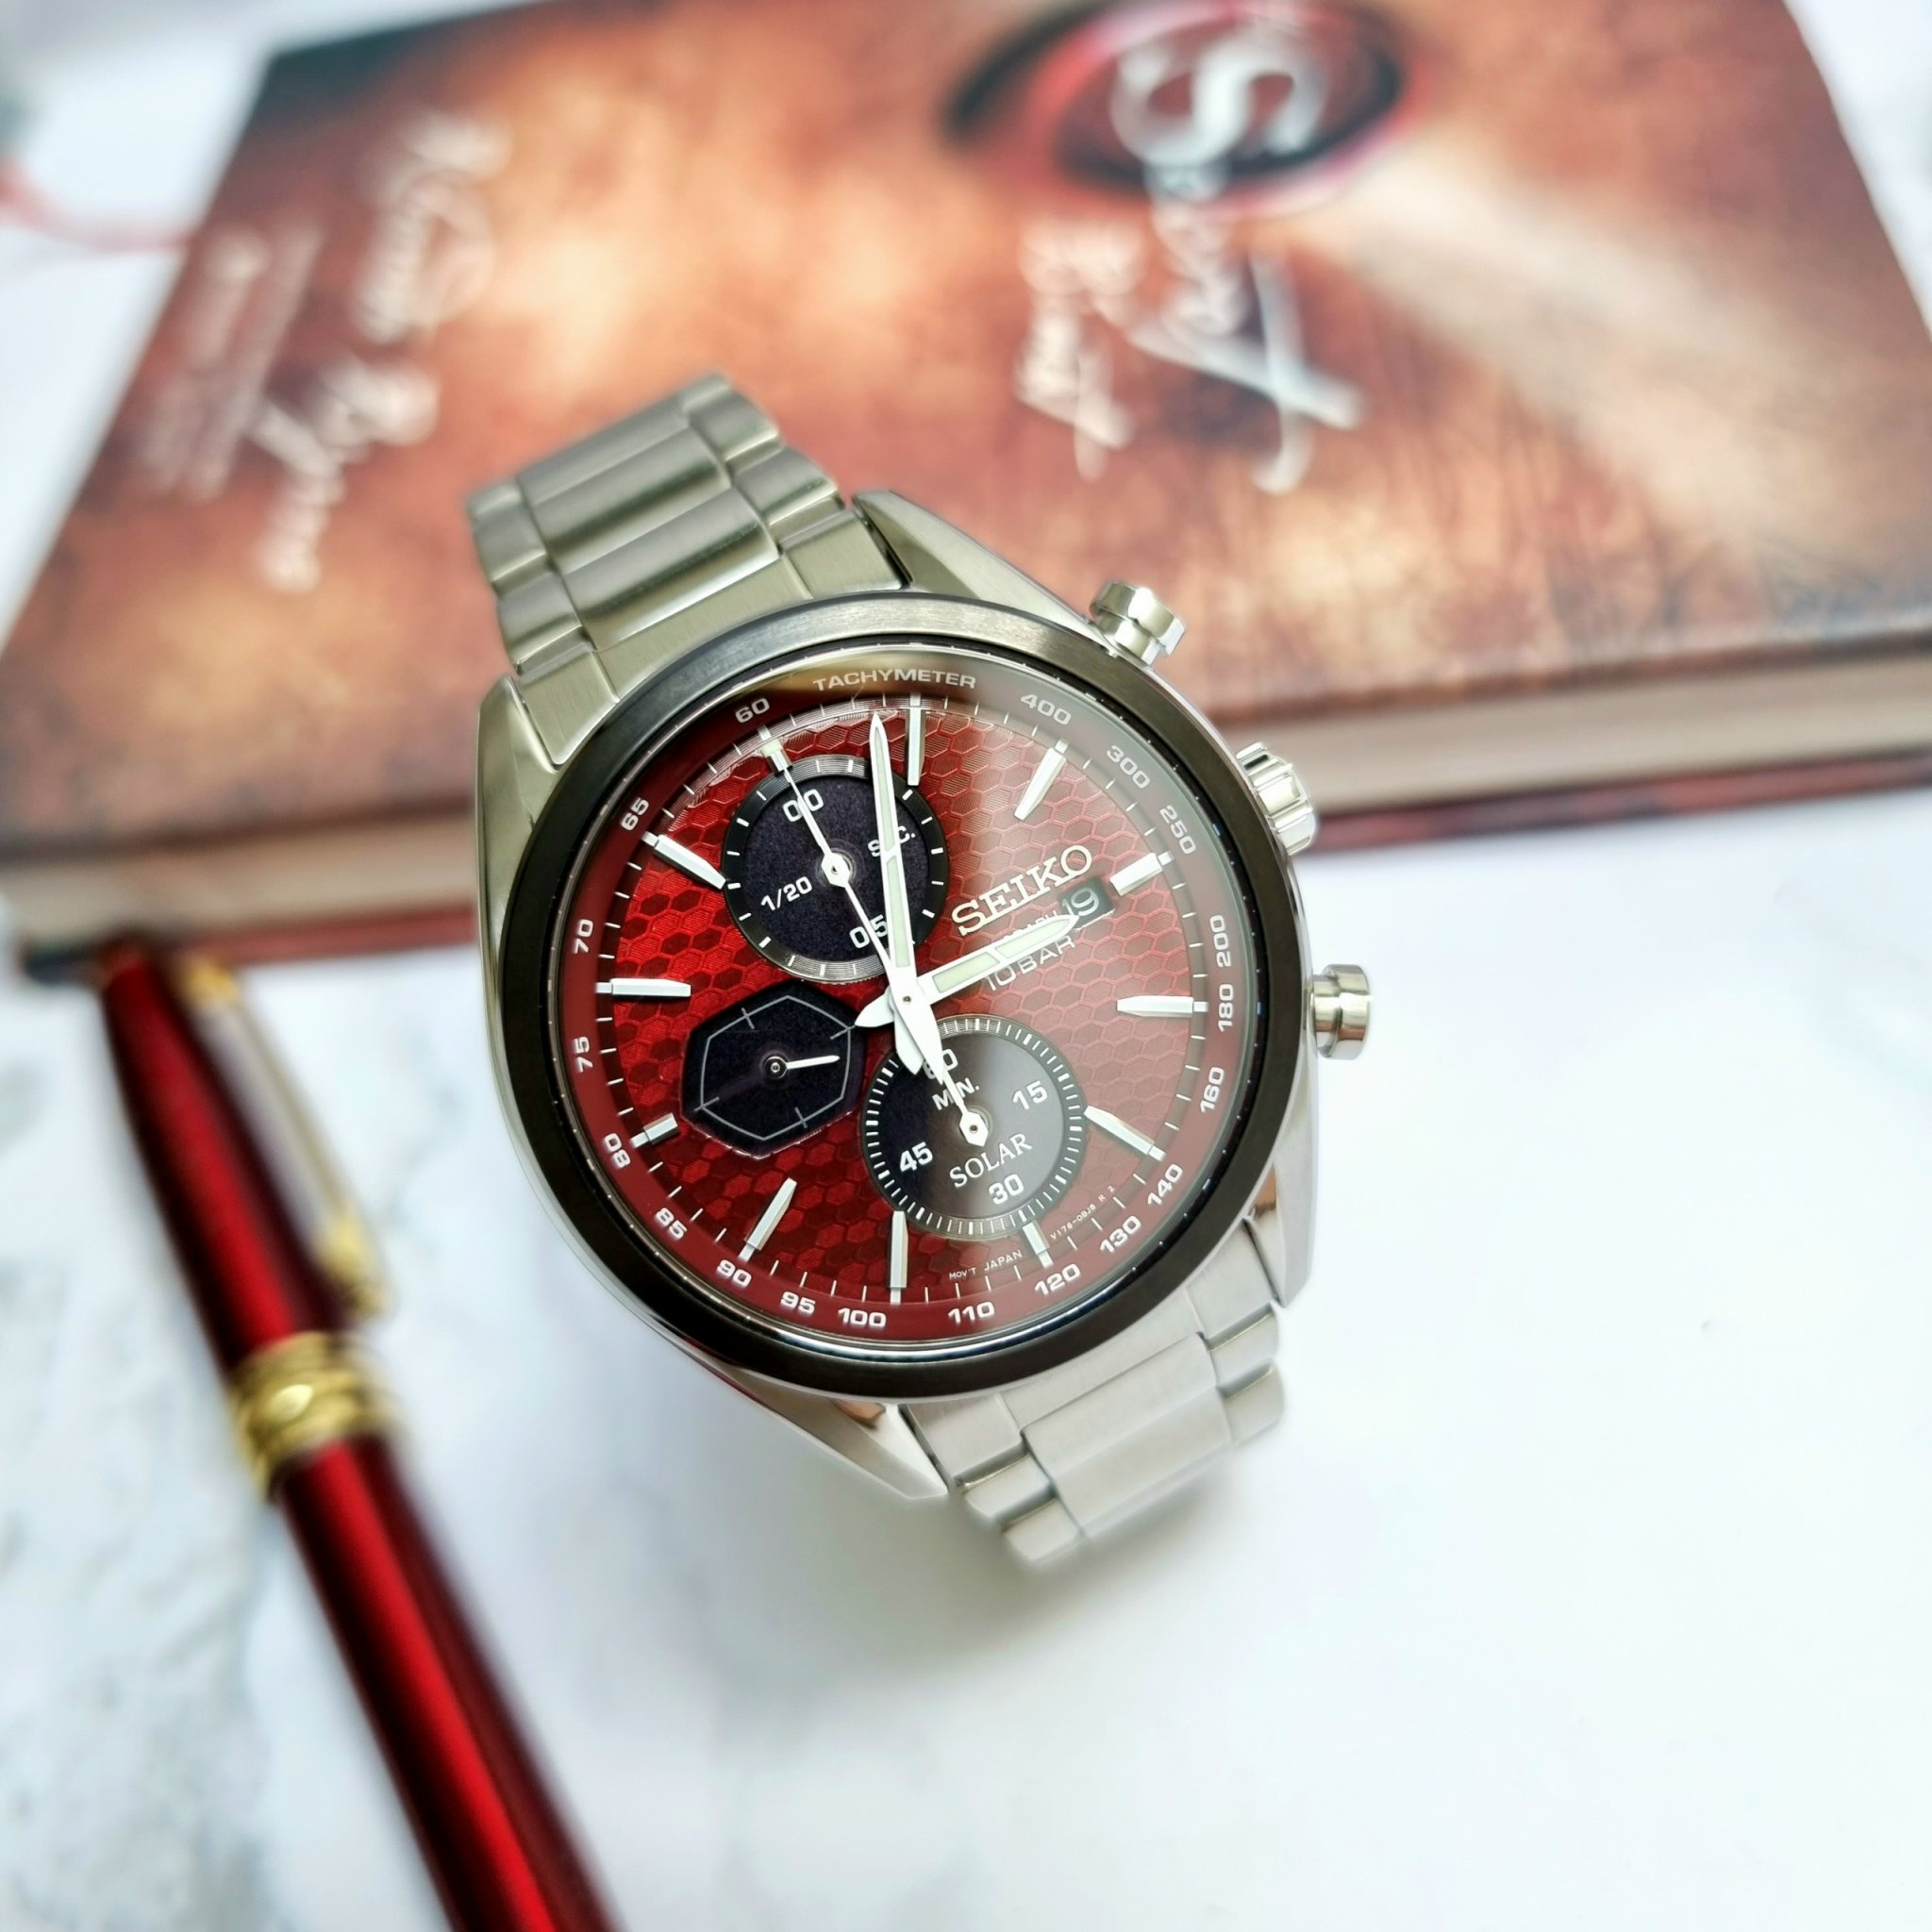 Đồng hồ Seiko nam chính hãng Solar Red Macchina Sportiva Chronograph   - DWatch Authentic